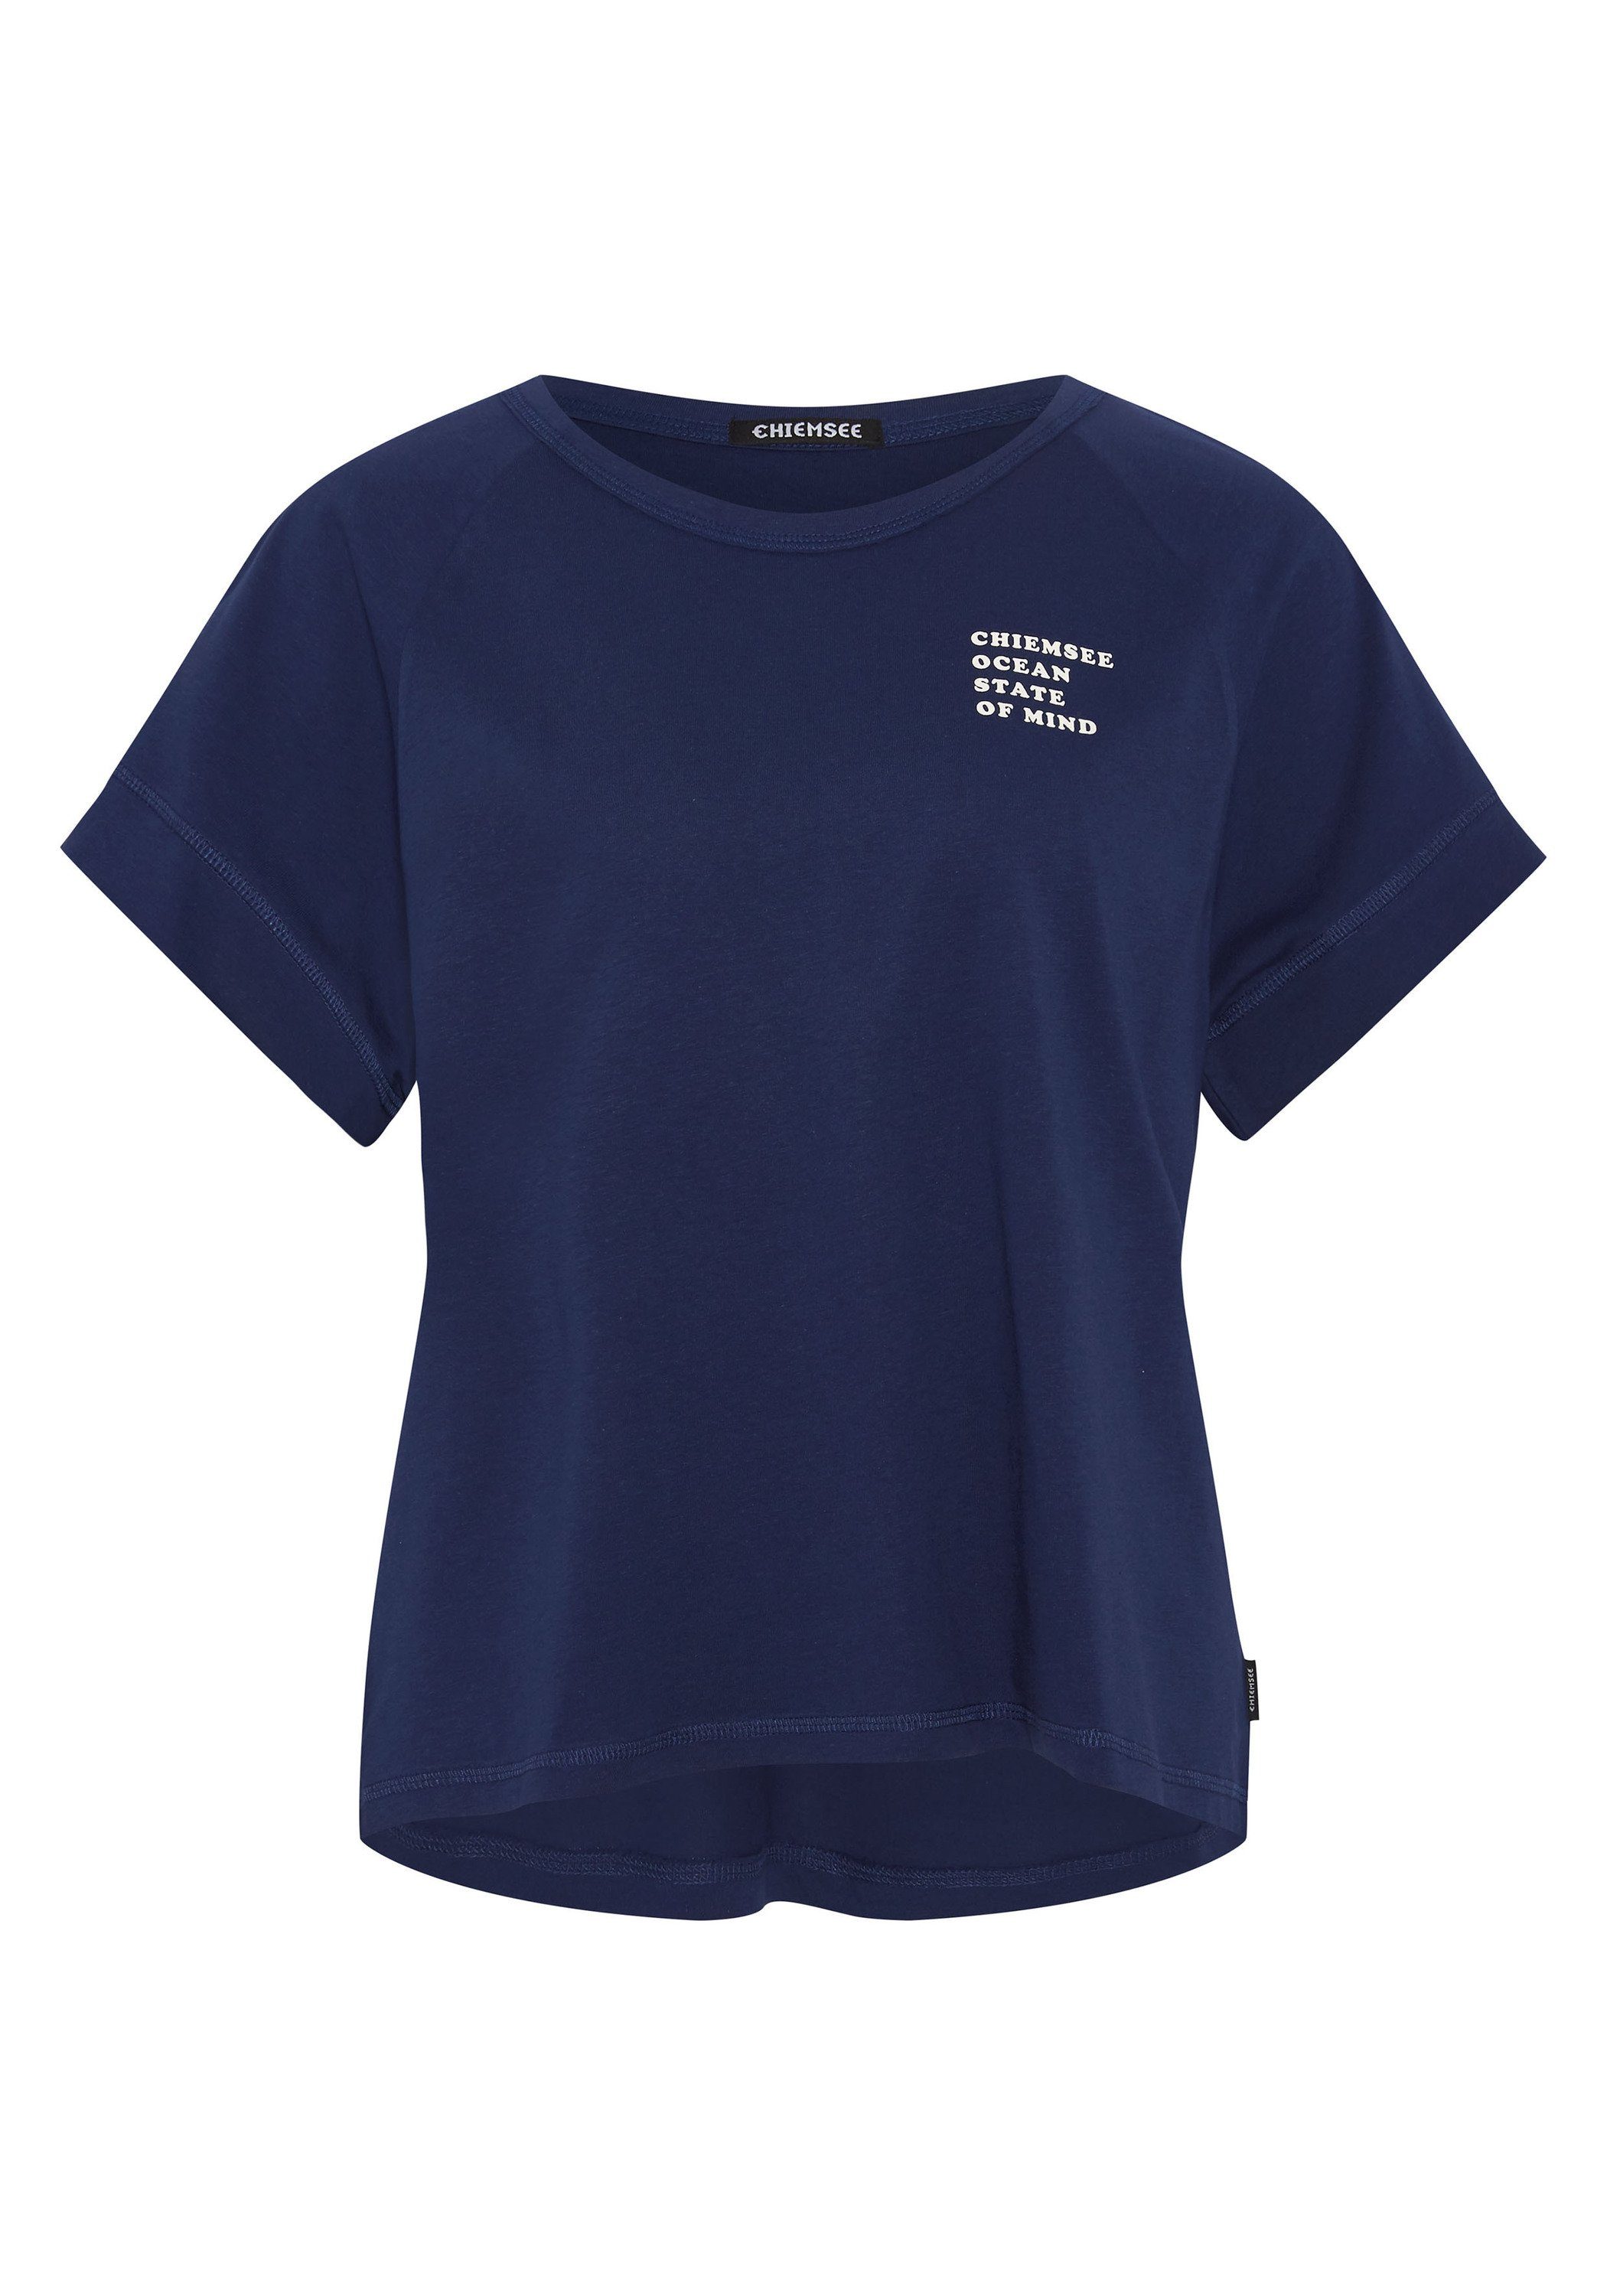 Chiemsee Print-Shirt Shirt in Vintage-Optik 1 19-3933 Medieval Blue